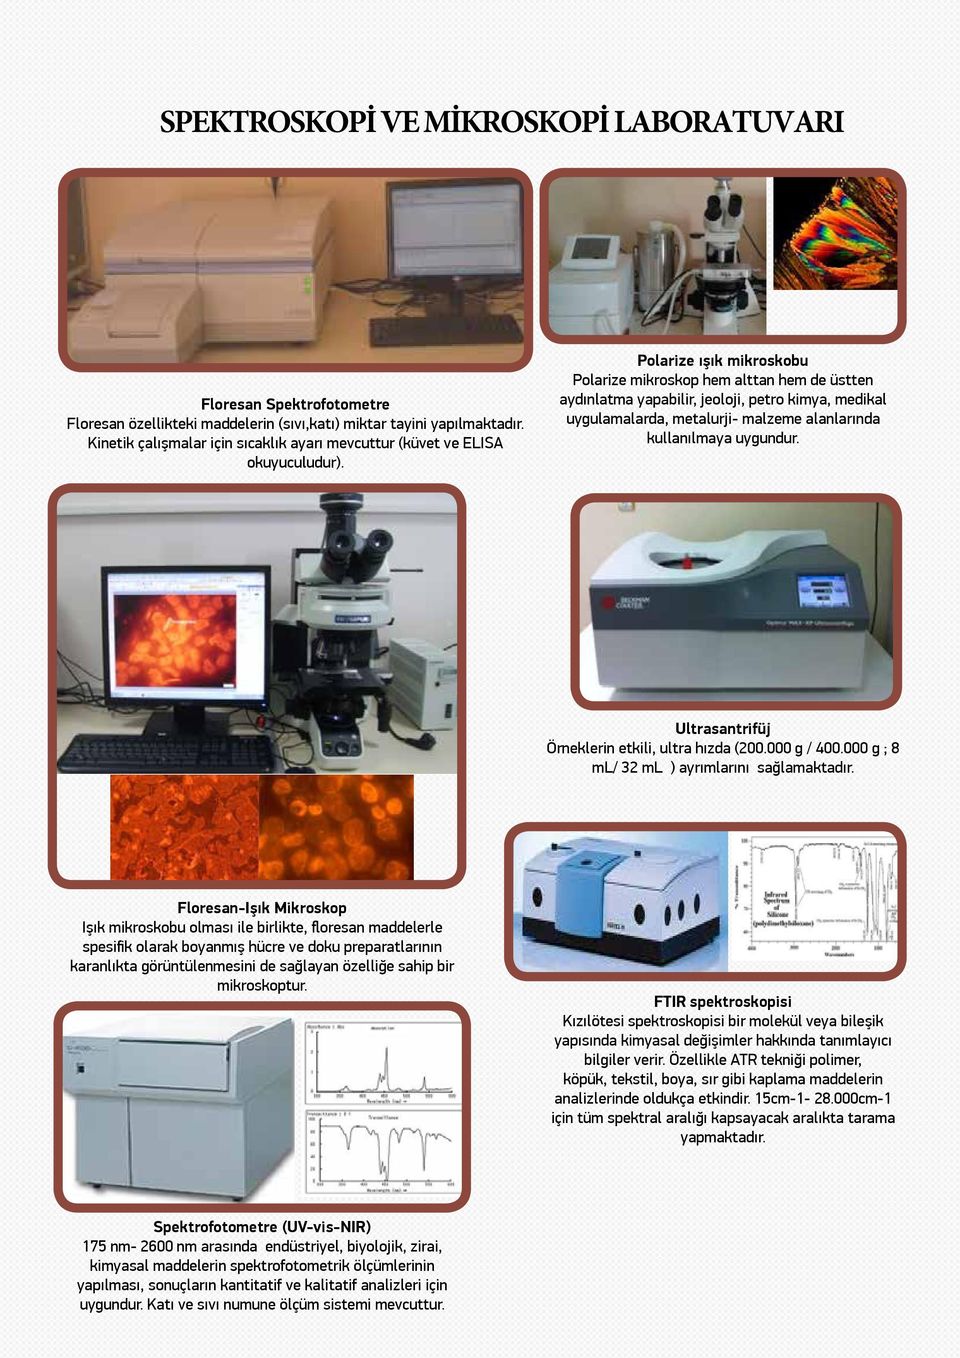 Polarize ışık mikroskobu Polarize mikroskop hem alttan hem de üstten aydınlatma yapabilir, jeoloji, petro kimya, medikal uygulamalarda, metalurji- malzeme alanlarında kullanılmaya uygundur.